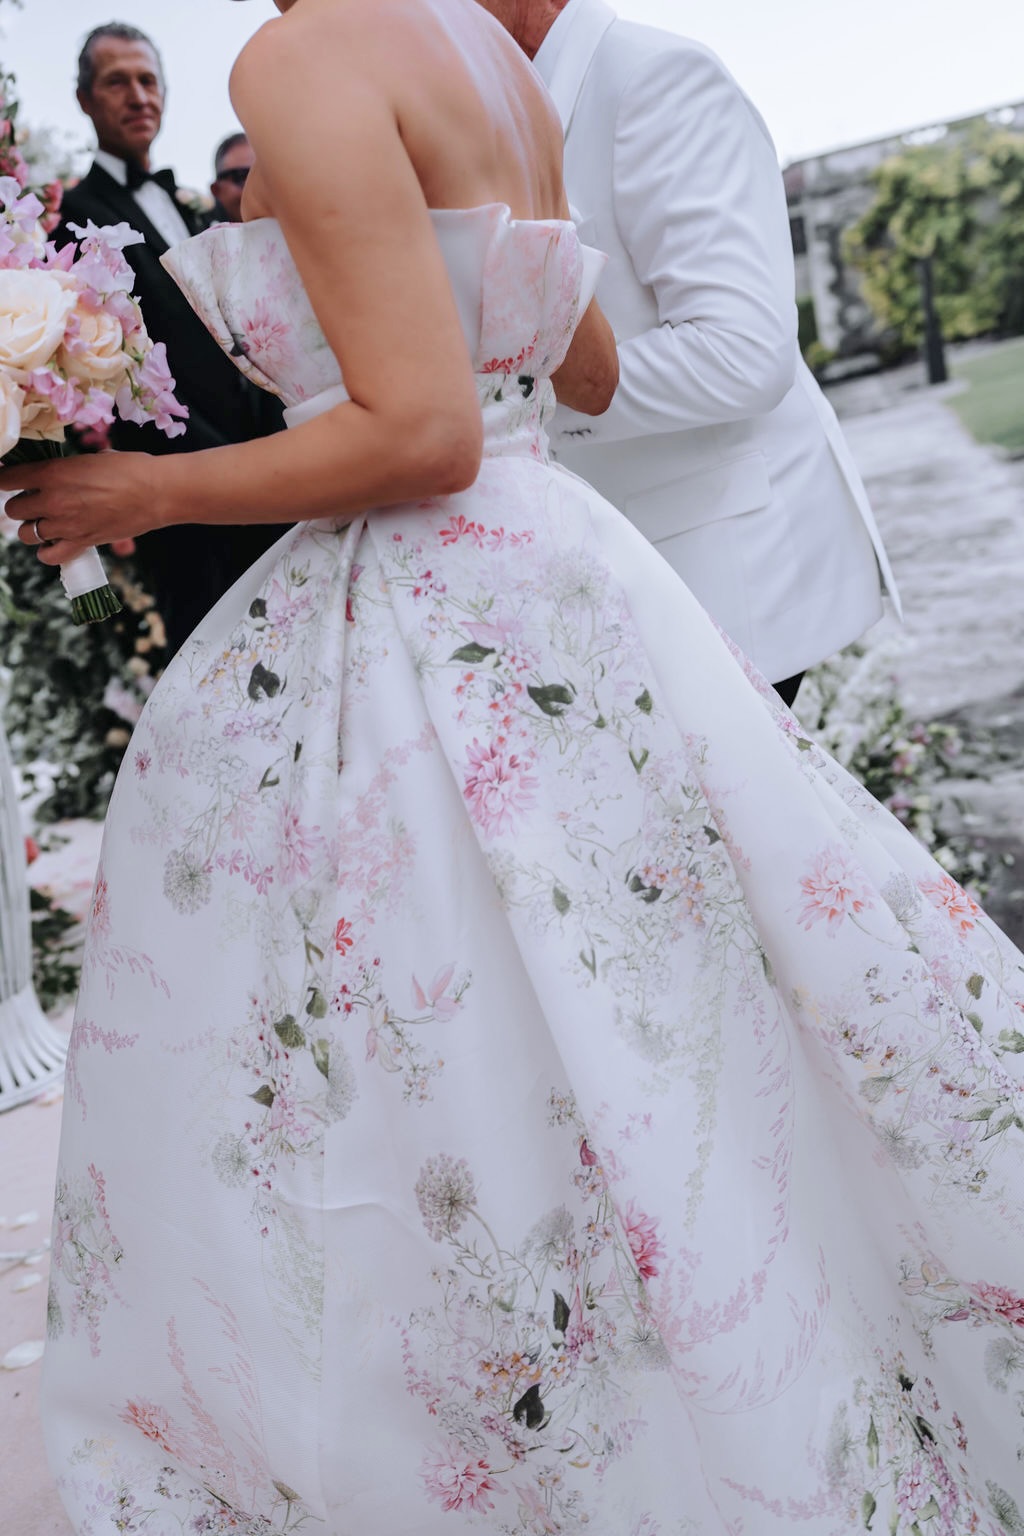 Wedding dress with flowers at Lake Garda wedding